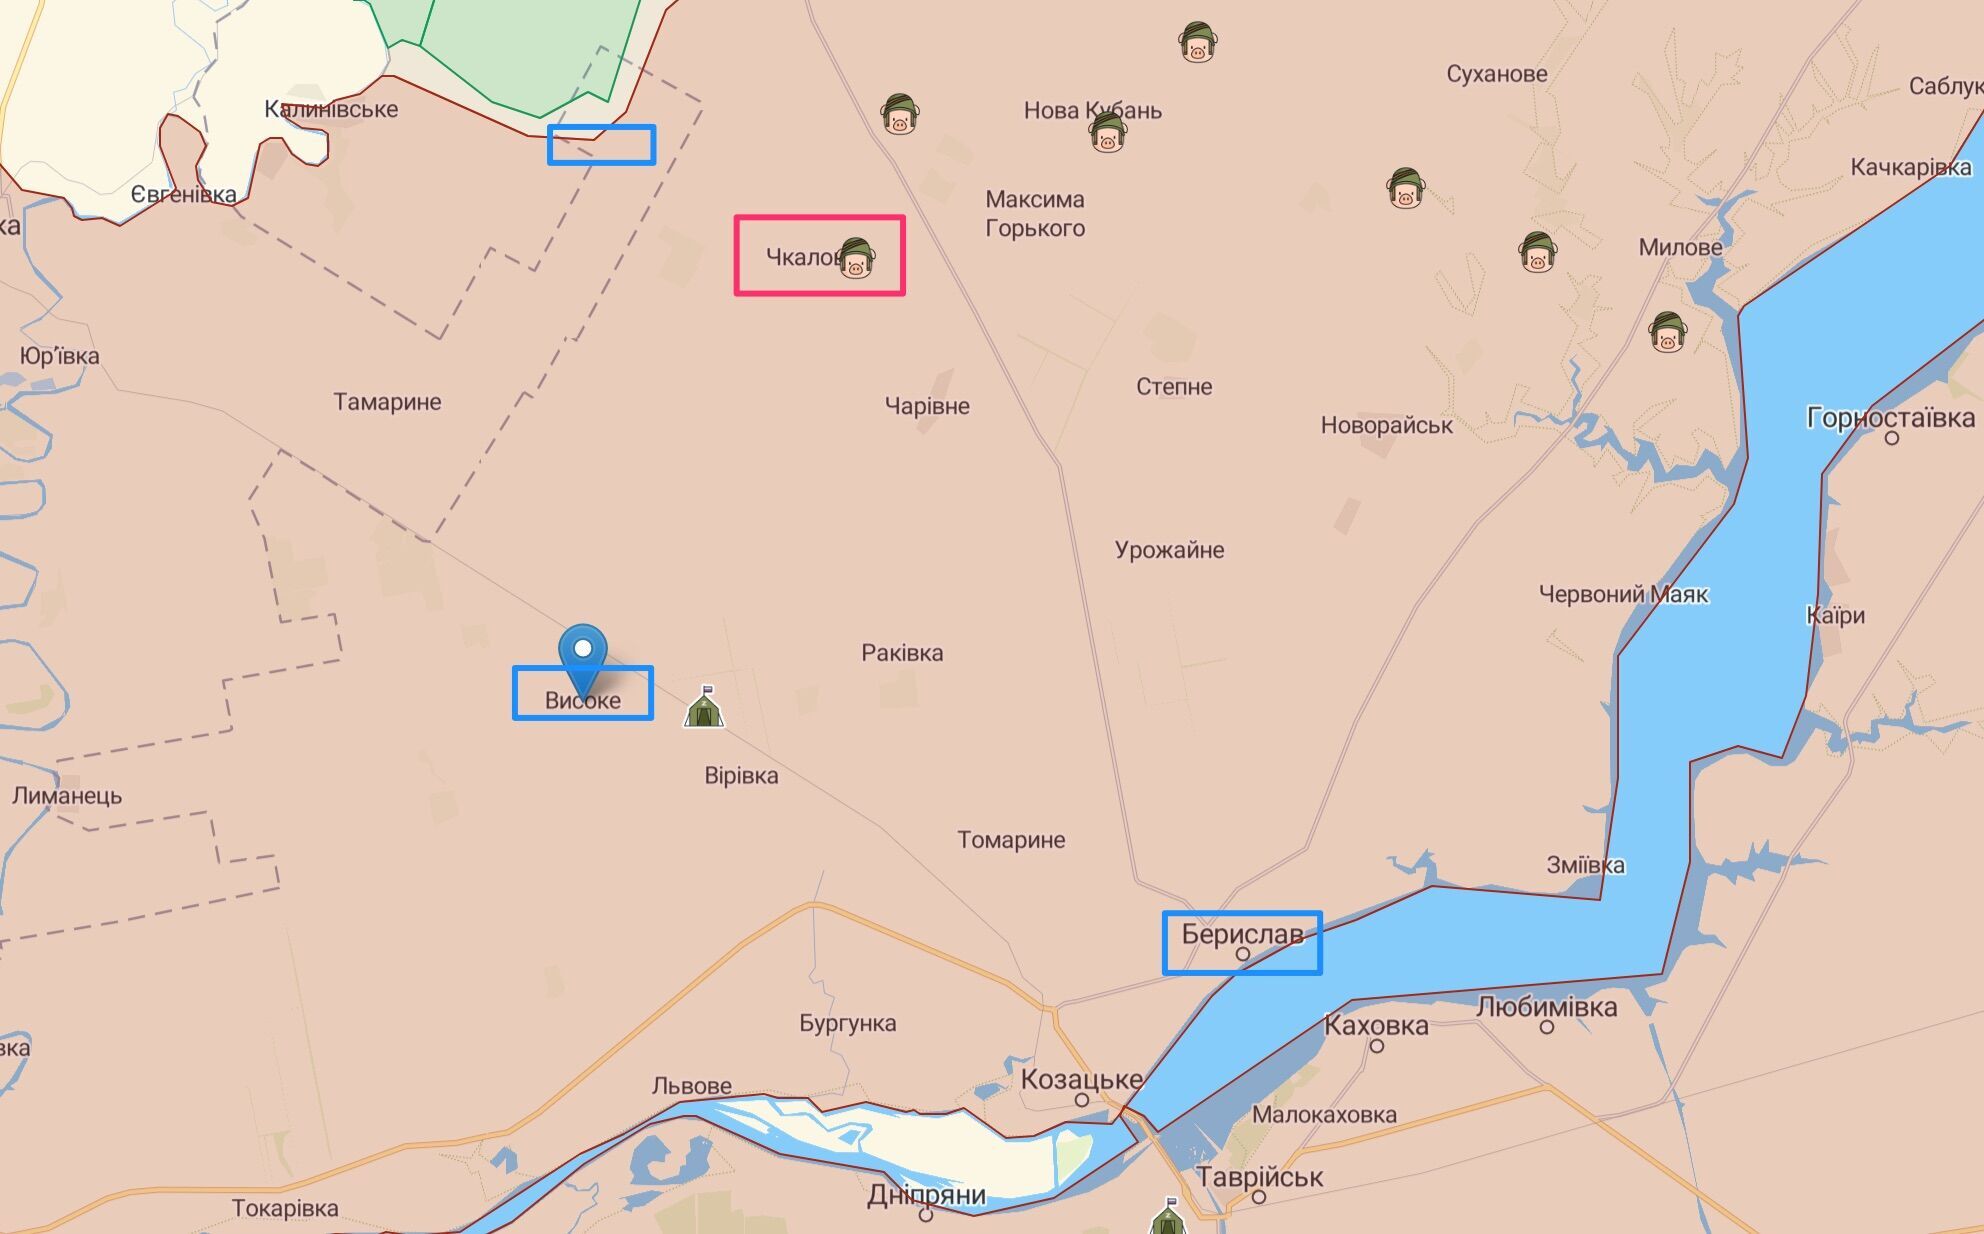 Движения российской армии на Бериславском направлении (розовый цвет – условное ослабление, голубой – усиление)